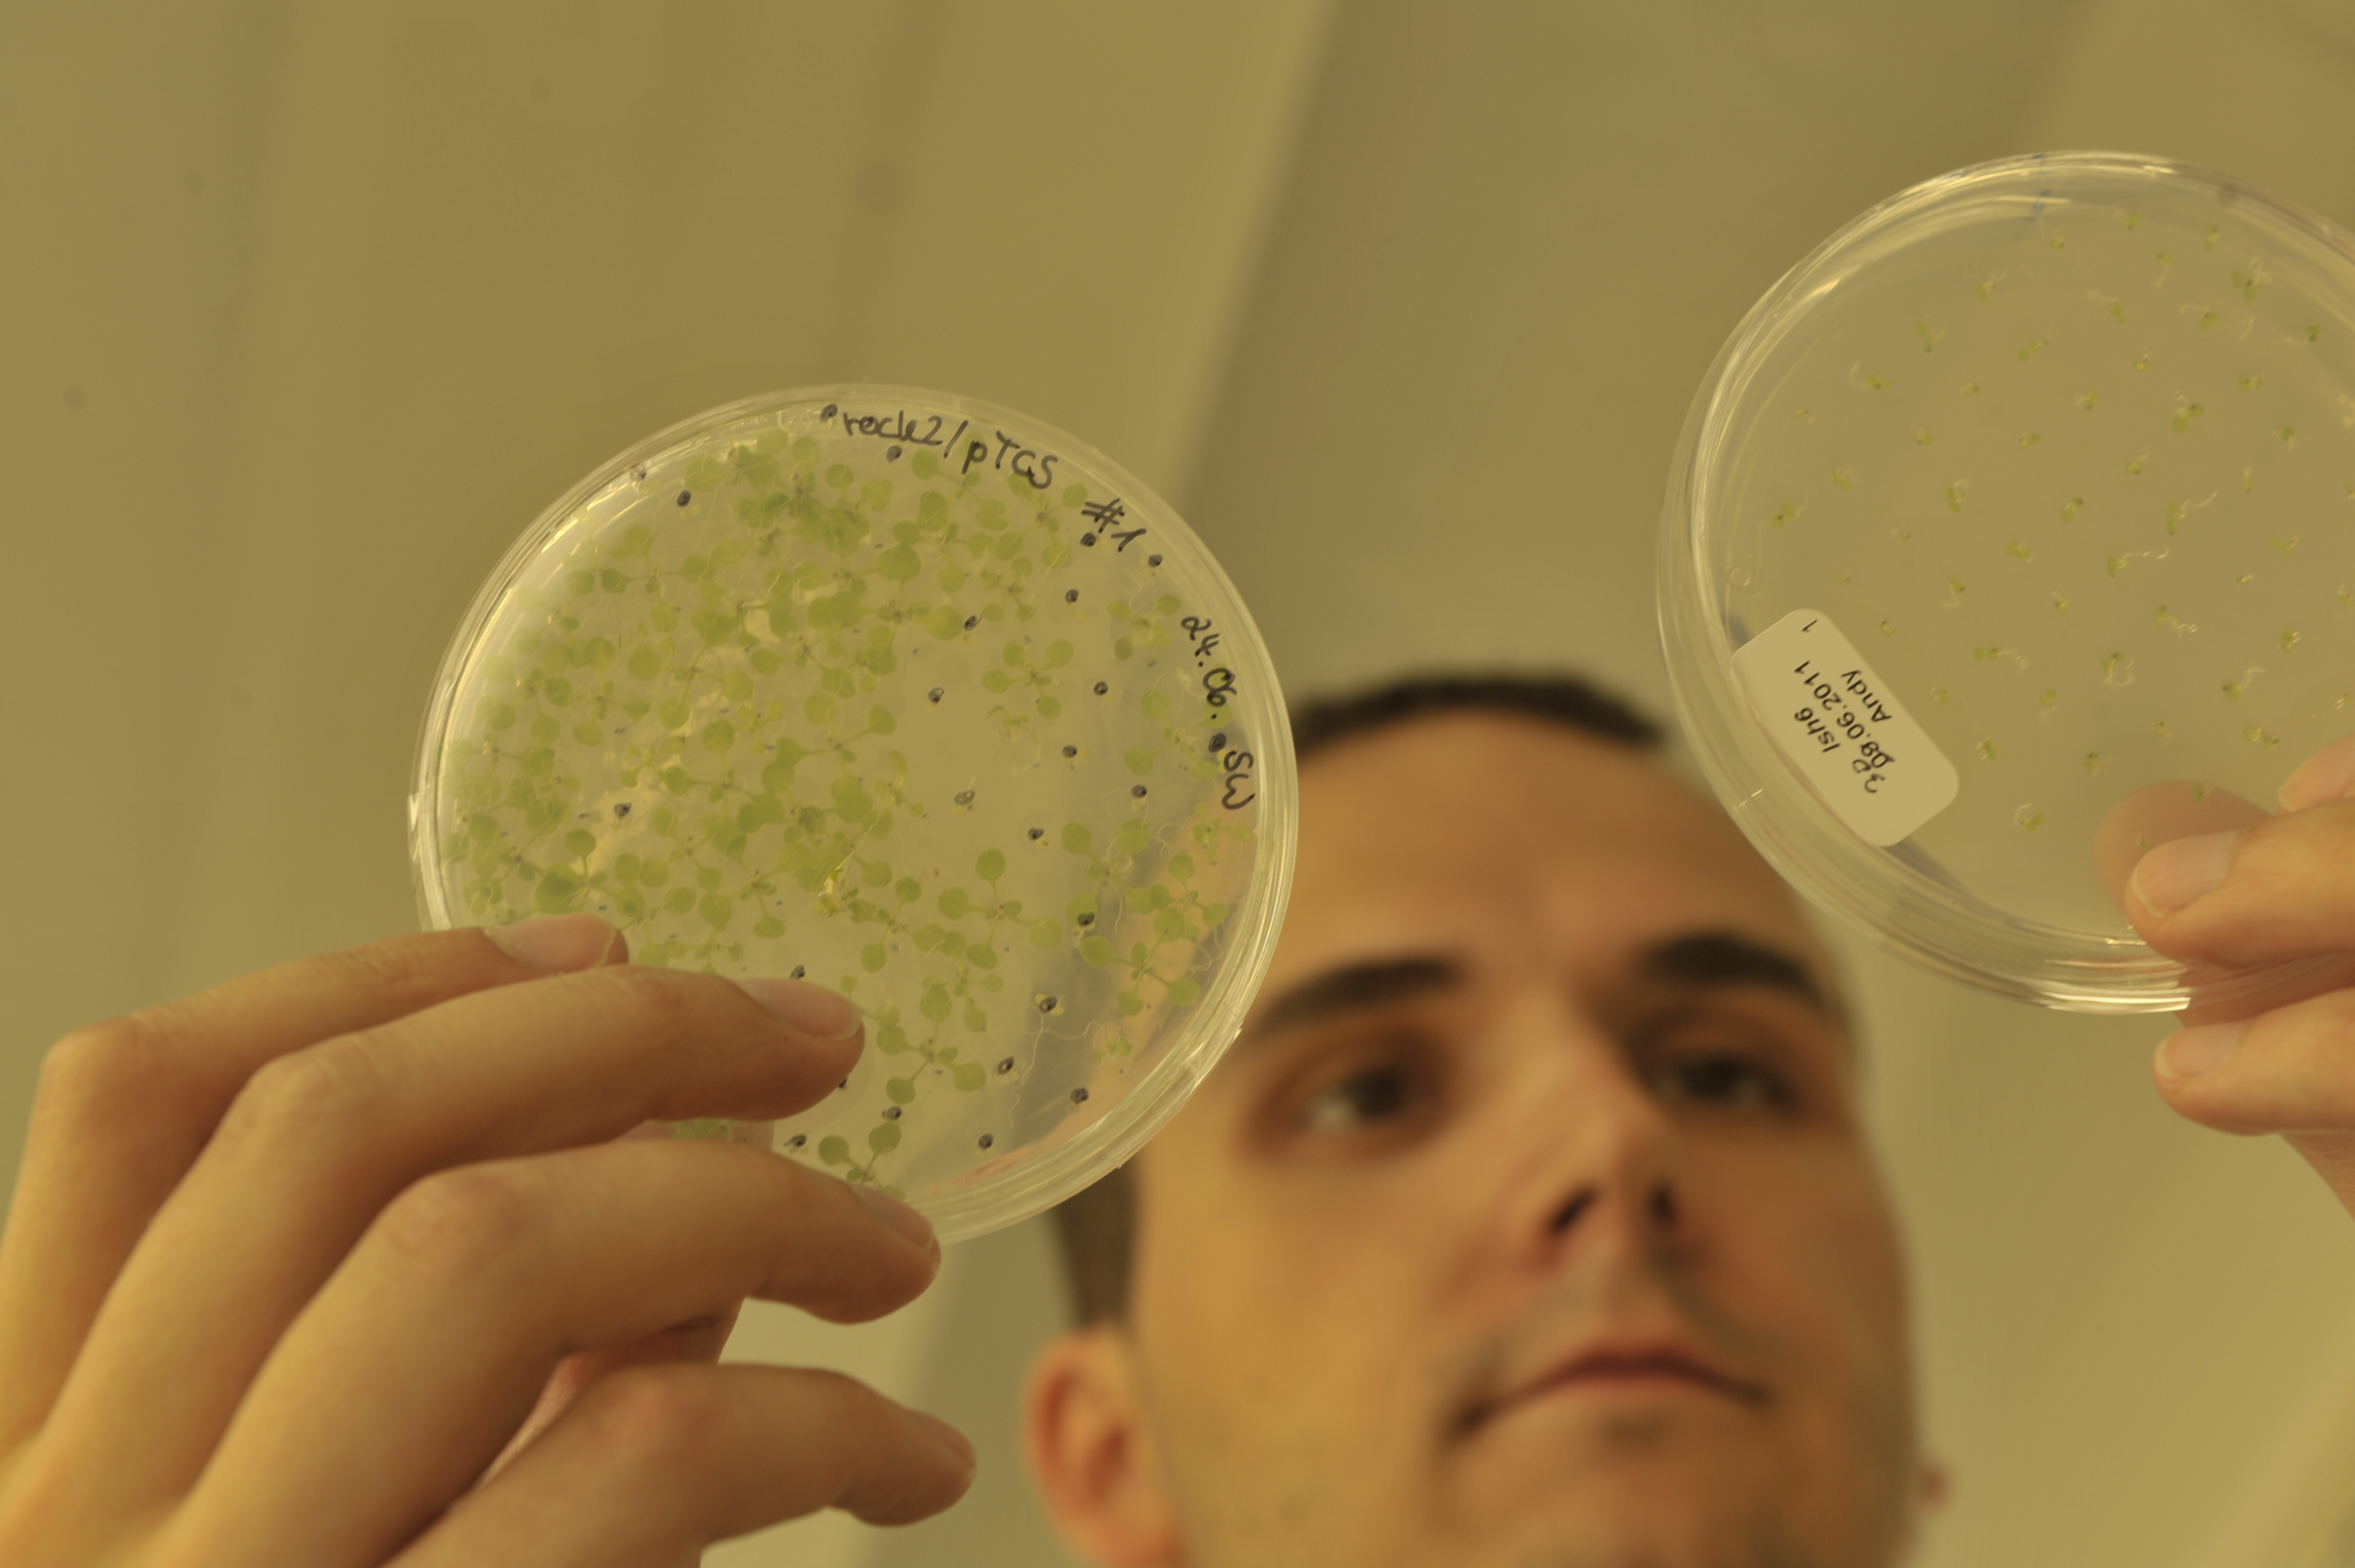 Bakterienwachstum auf Agarplatten
Quelle: Bernd Wannenmacher